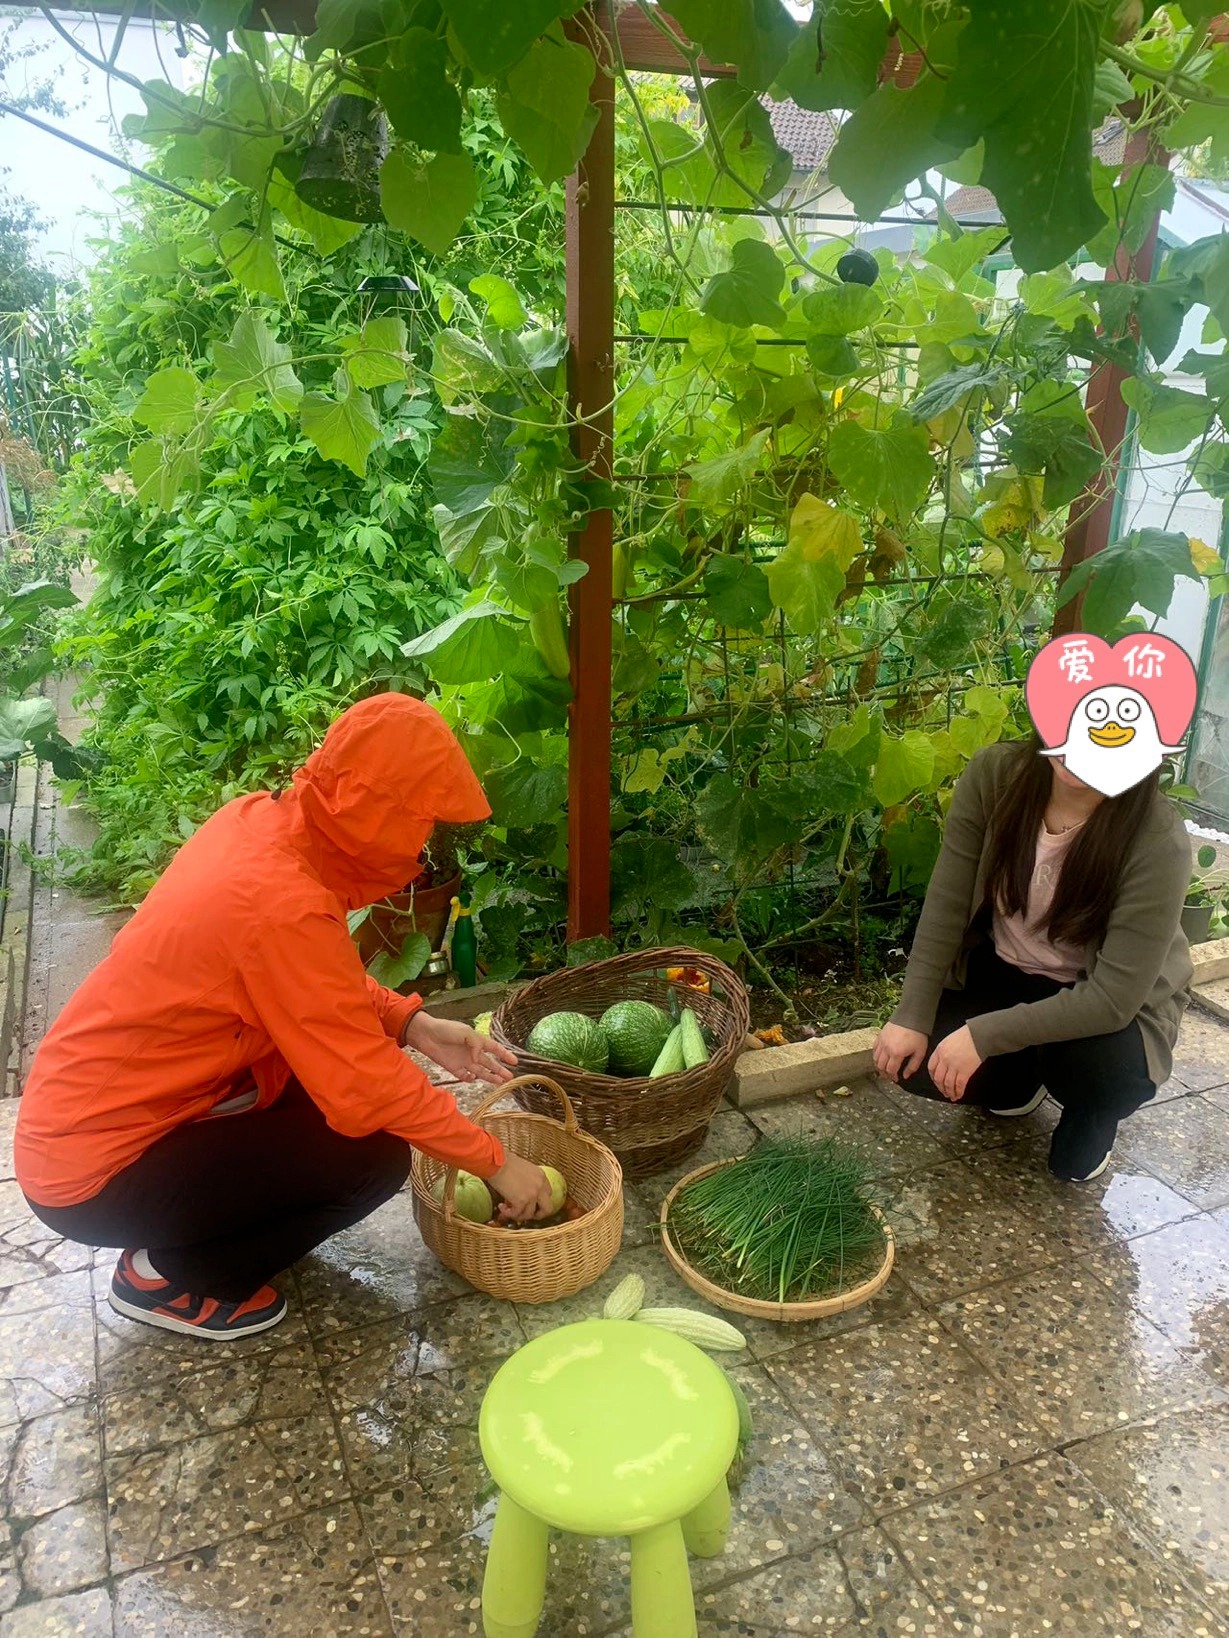 Vườn rau muống cà chua cực xịn ở Đức, chính chủ chỉ muốn nghỉ việc để ở nhà trồng rau - Ảnh 2.